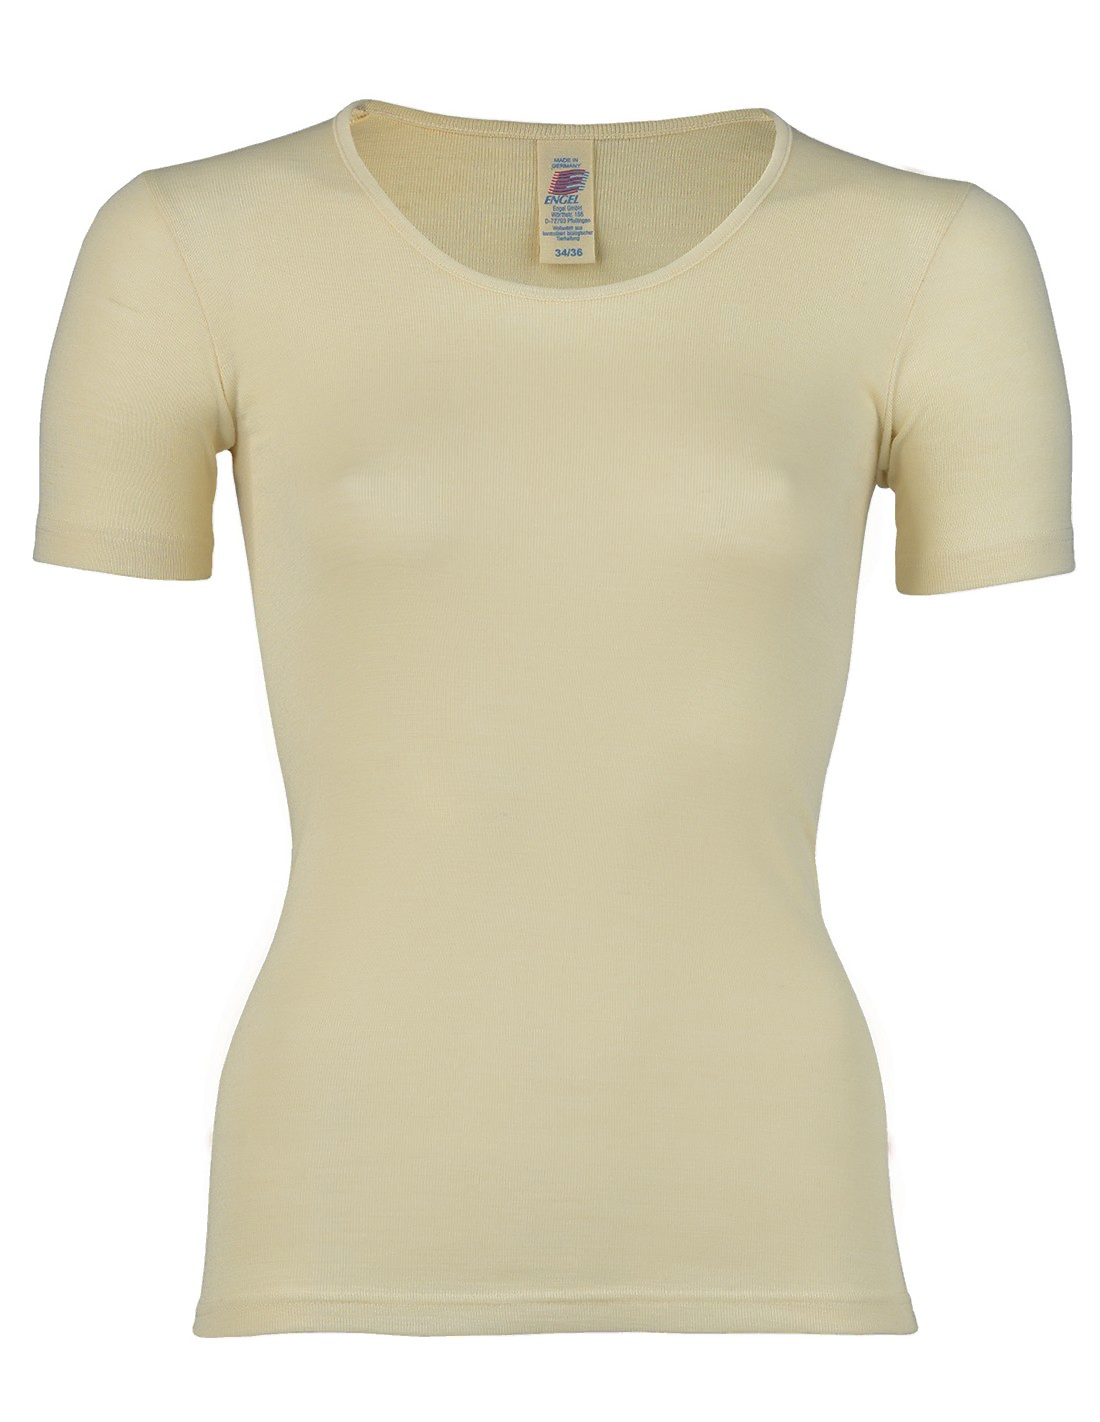 Image of Dames T-Shirt Zijde Wol Engel Natur, Kleur Gebroken wit, Maat 42/44 - Large